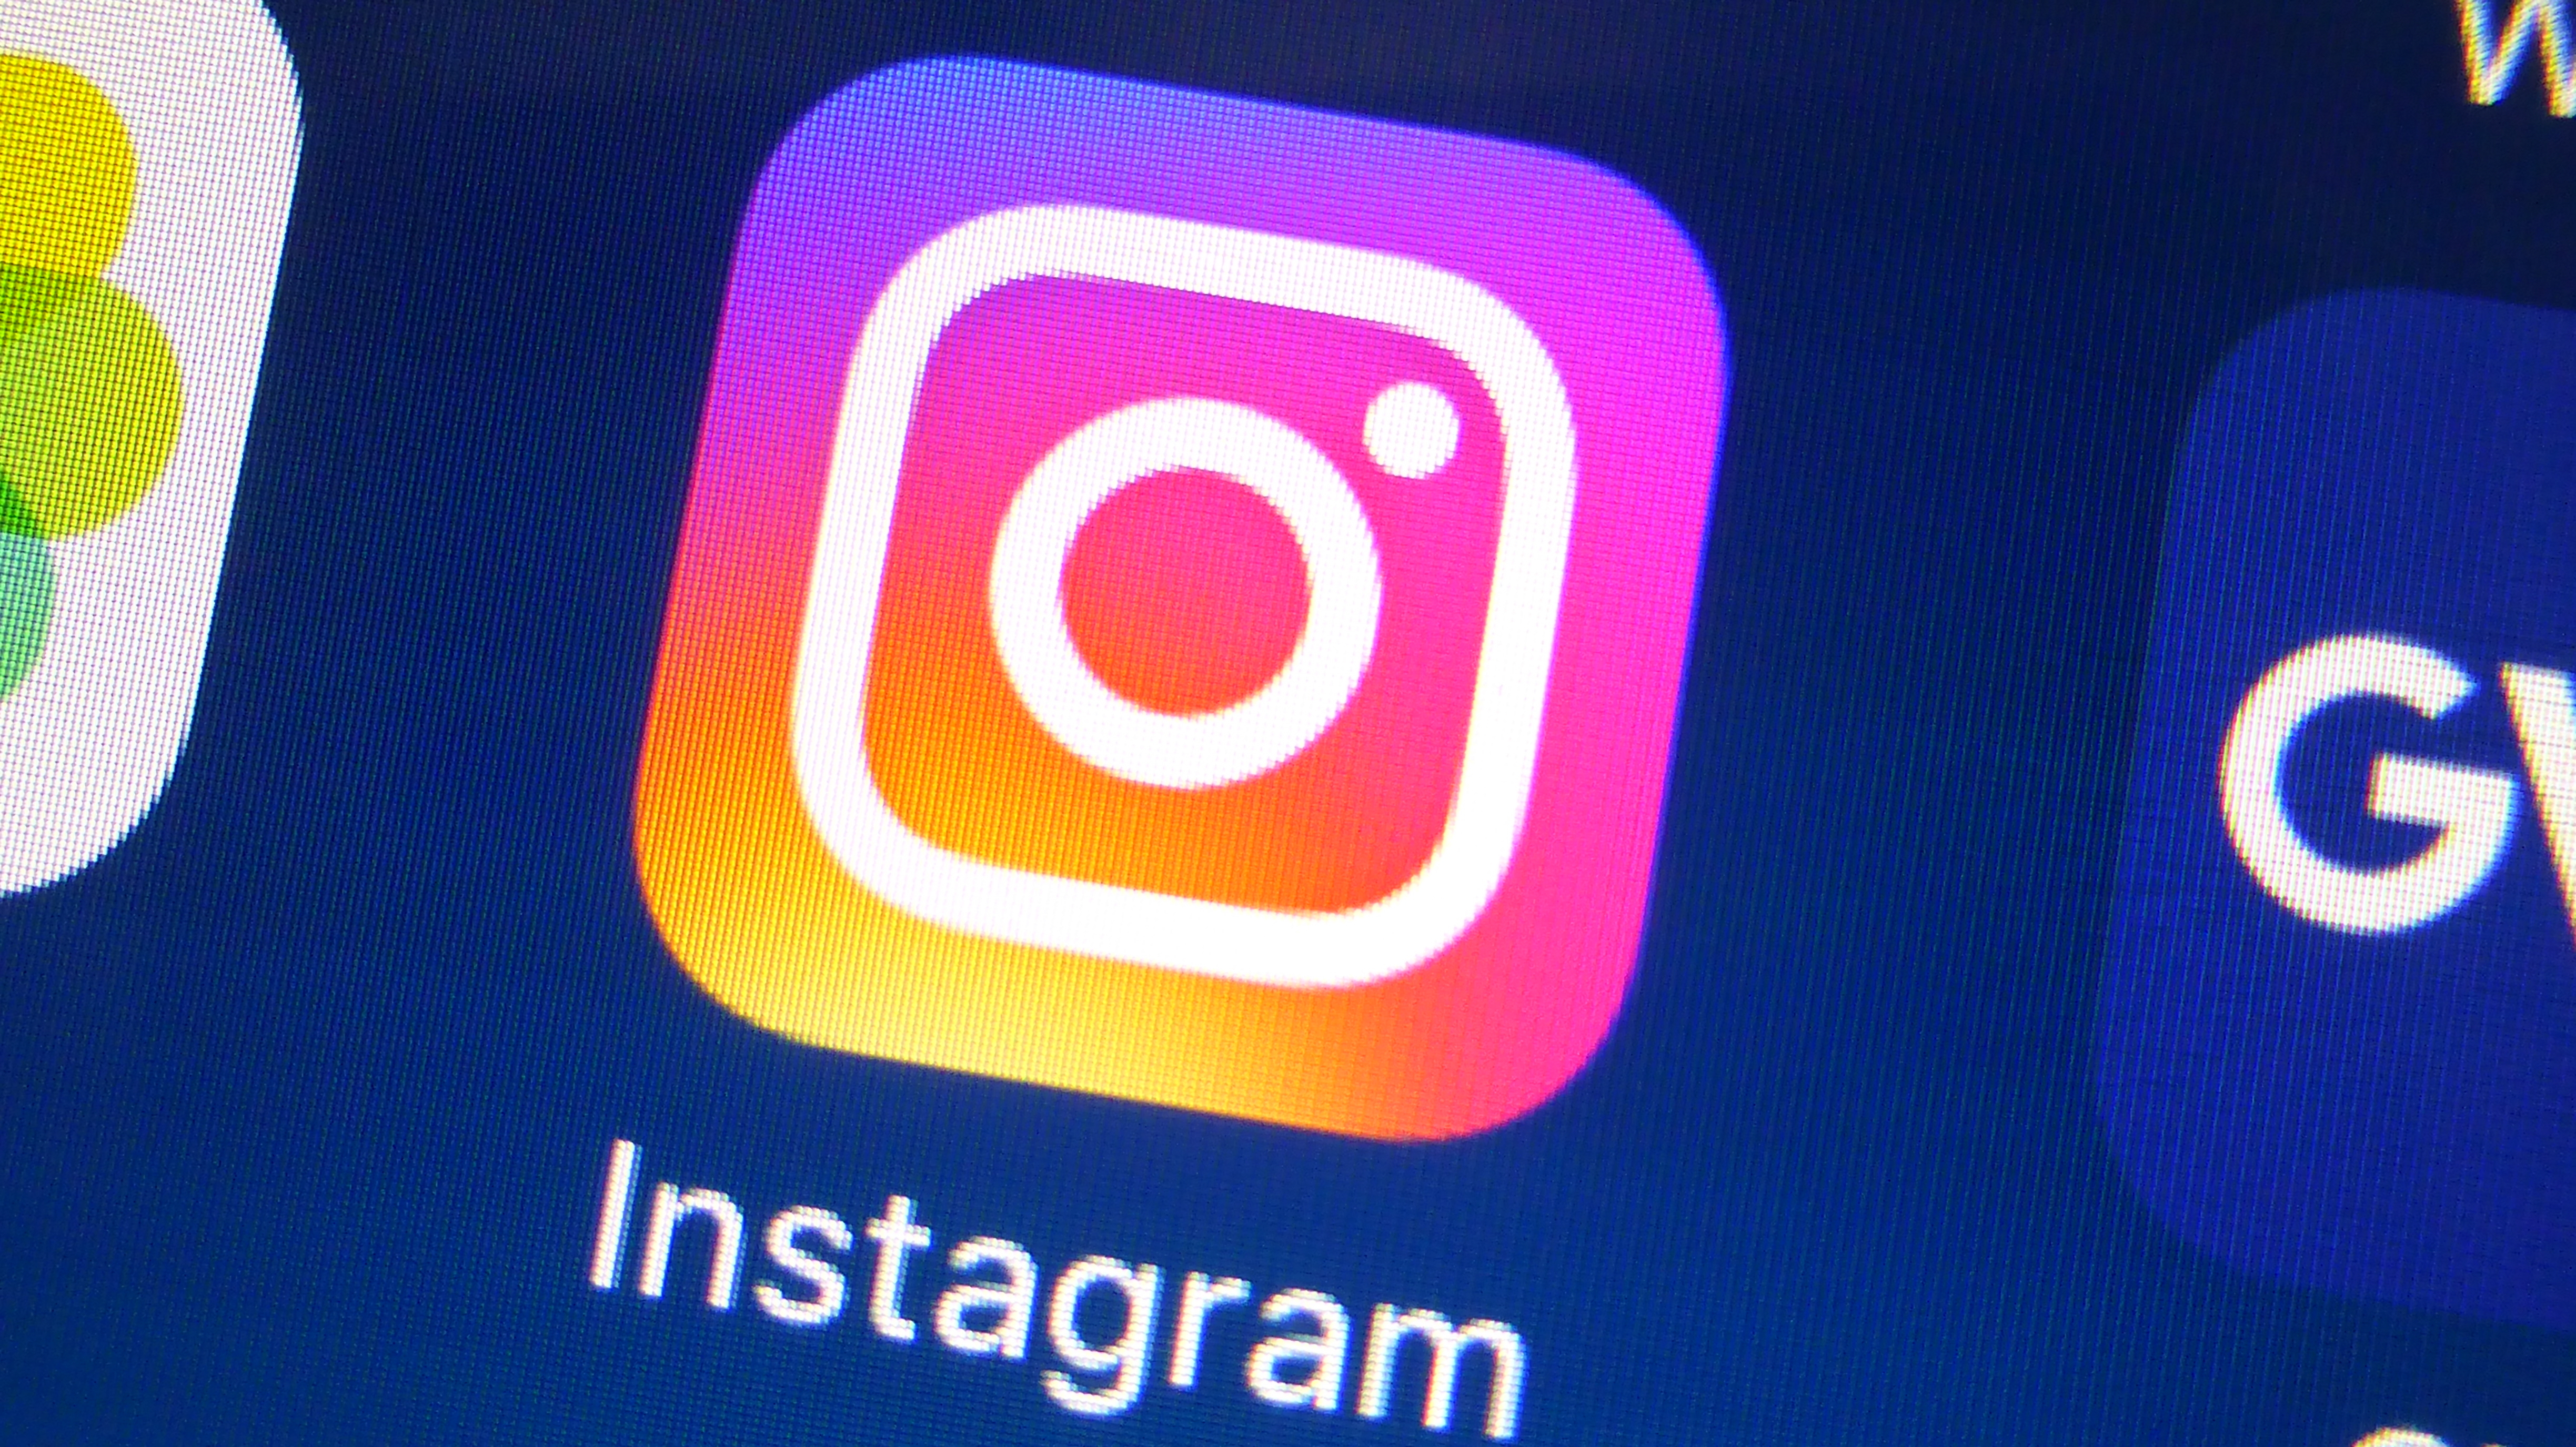 Instagram-Suche - so nutzen Sie sie richtig | heise online